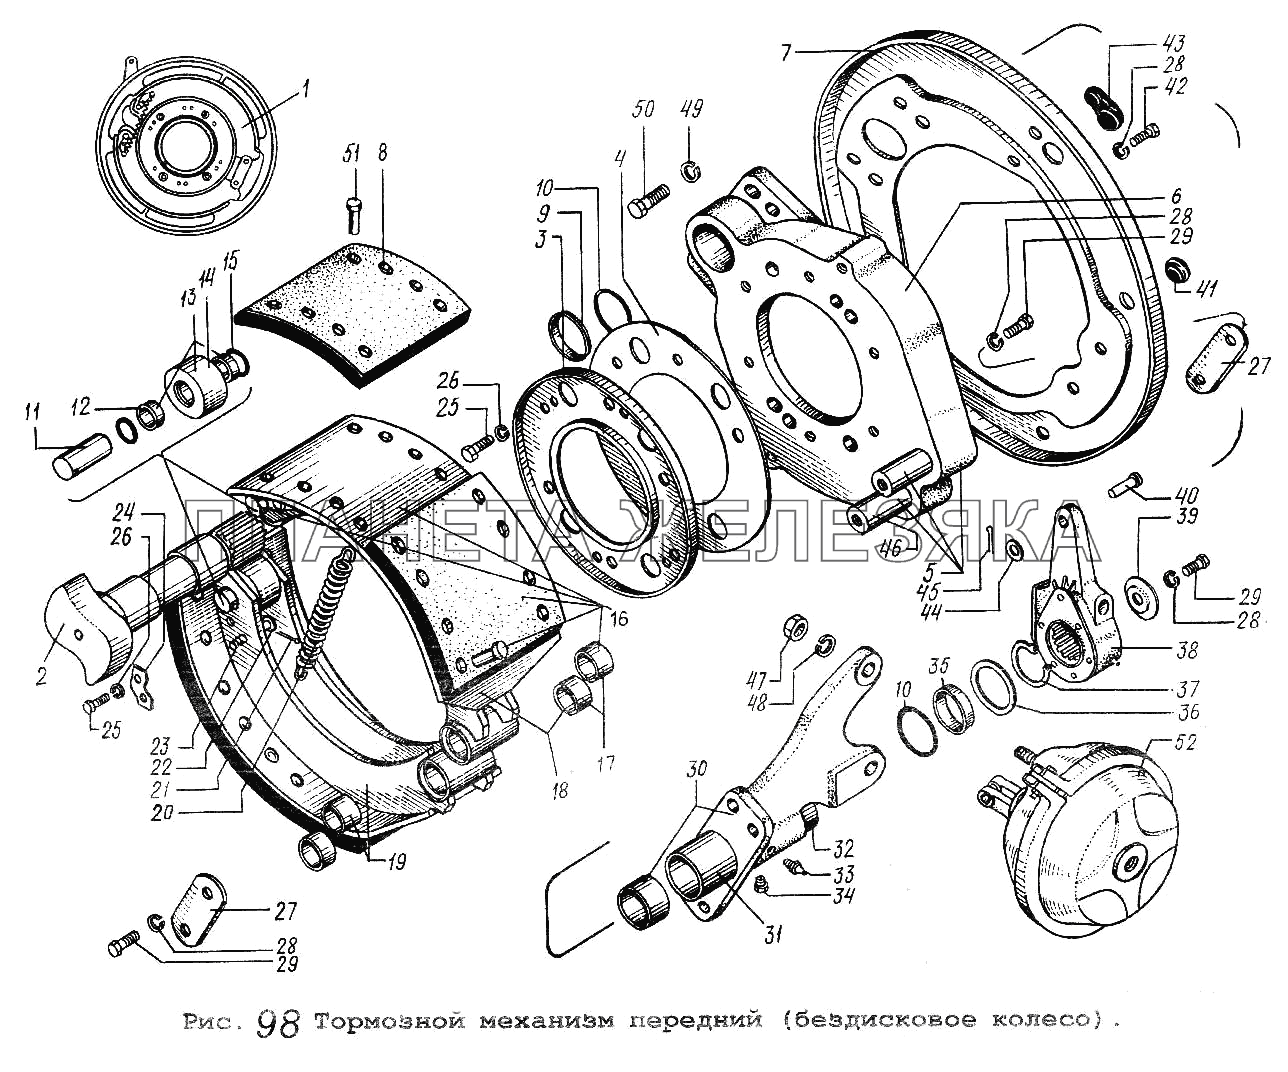 Тормозной механизм передний (бездисковое колесо) МАЗ-53371